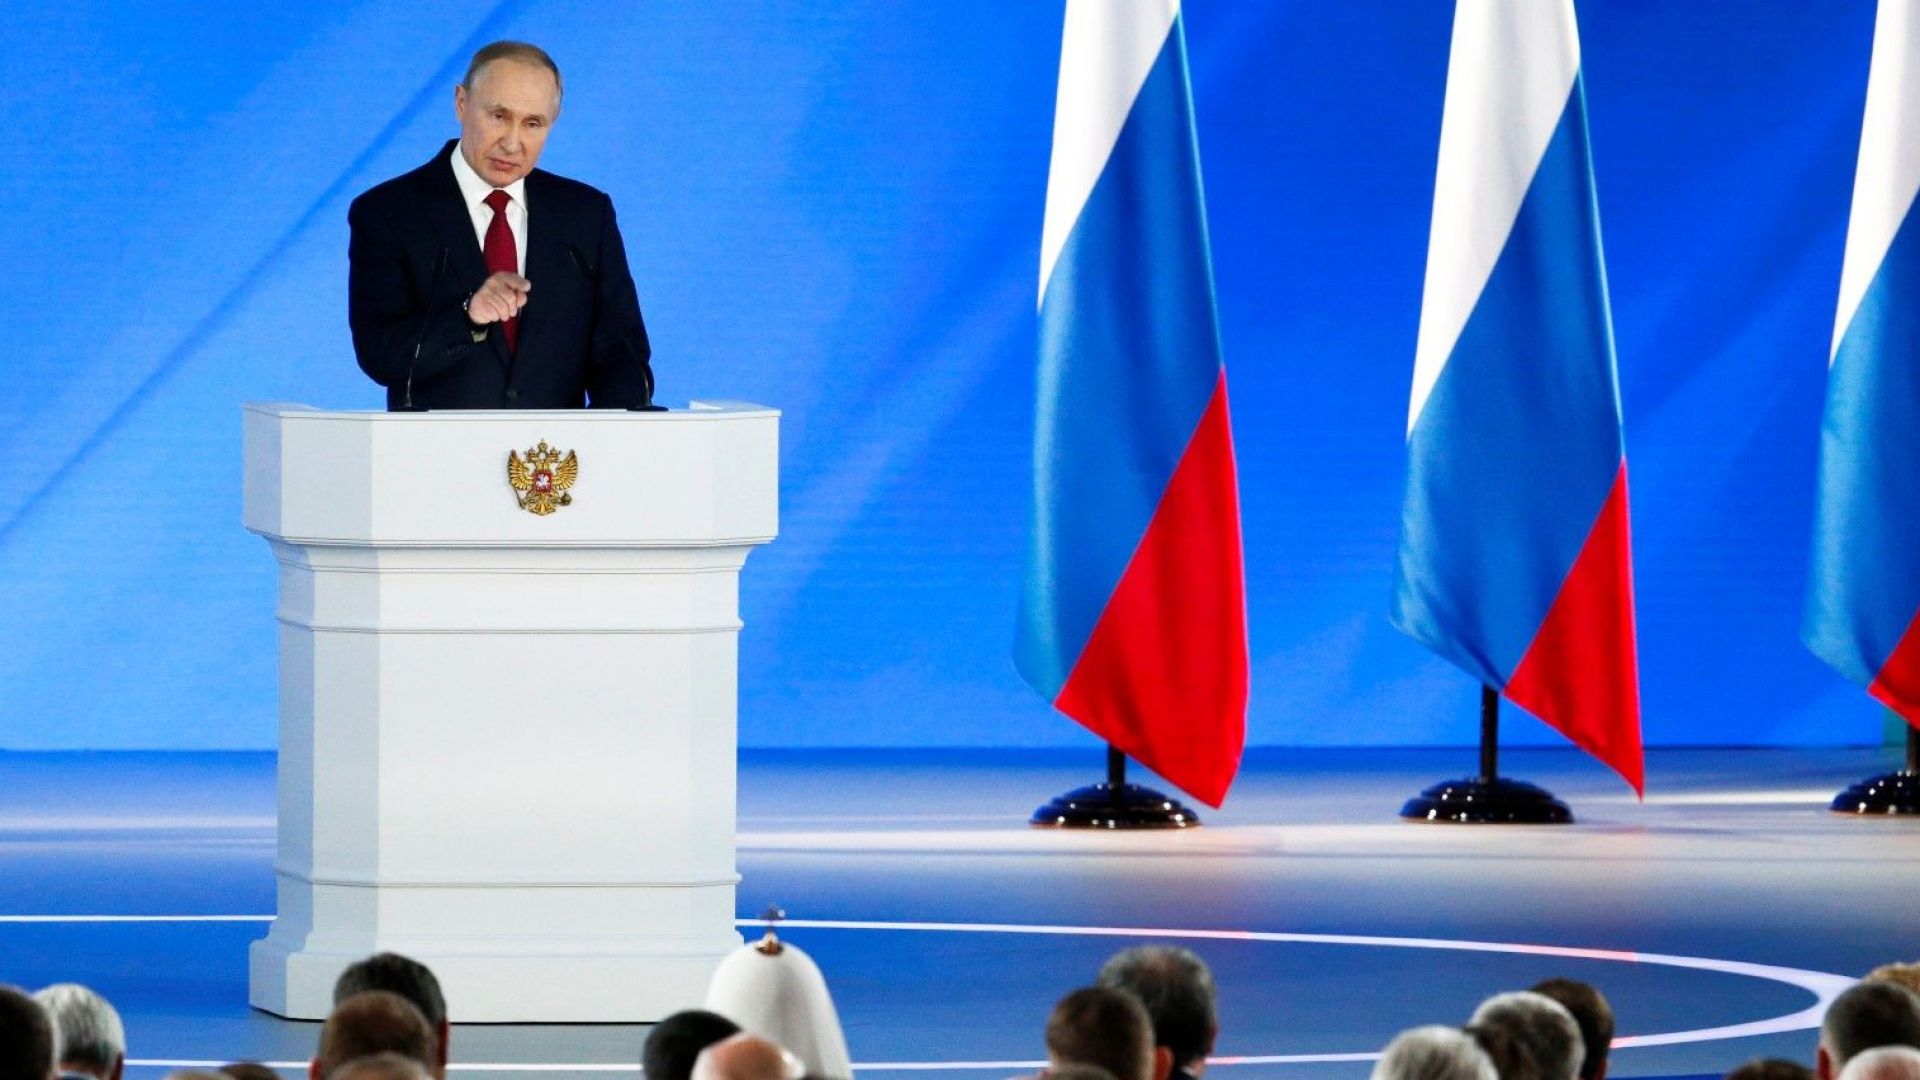 Годишната реч на Путин: раждаемост, майчинство, здраве, реформи във властта и конституцията